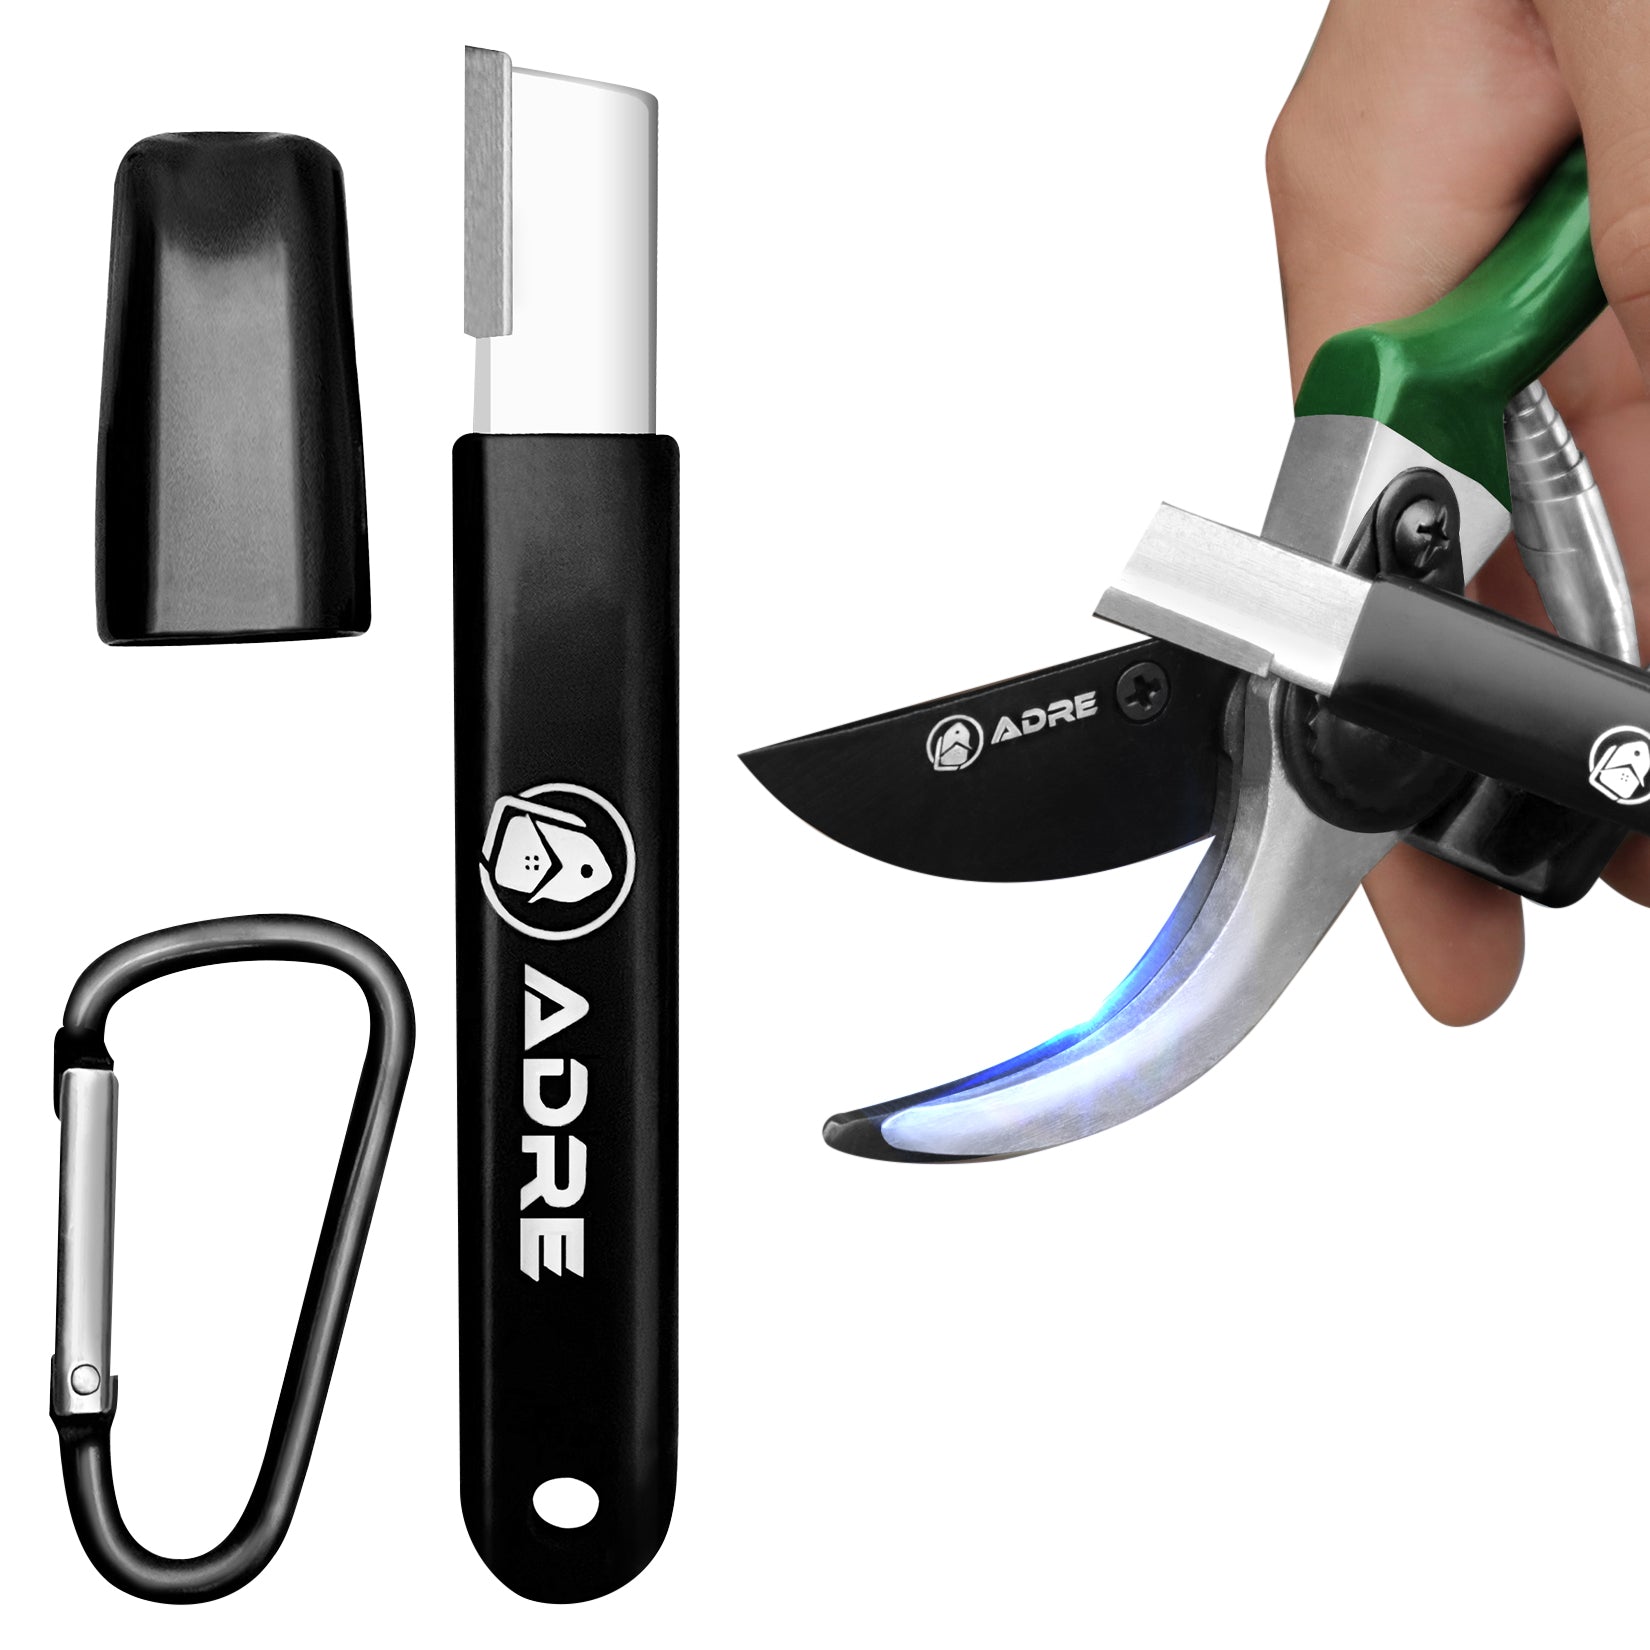 Speedy Sharp, Tool Sharpener, Blade Sharpener, Carbide Sharpener, Knife  Sharpening Tool for Kitchen knives Garden Tools Axe Pocket Knives Pruning